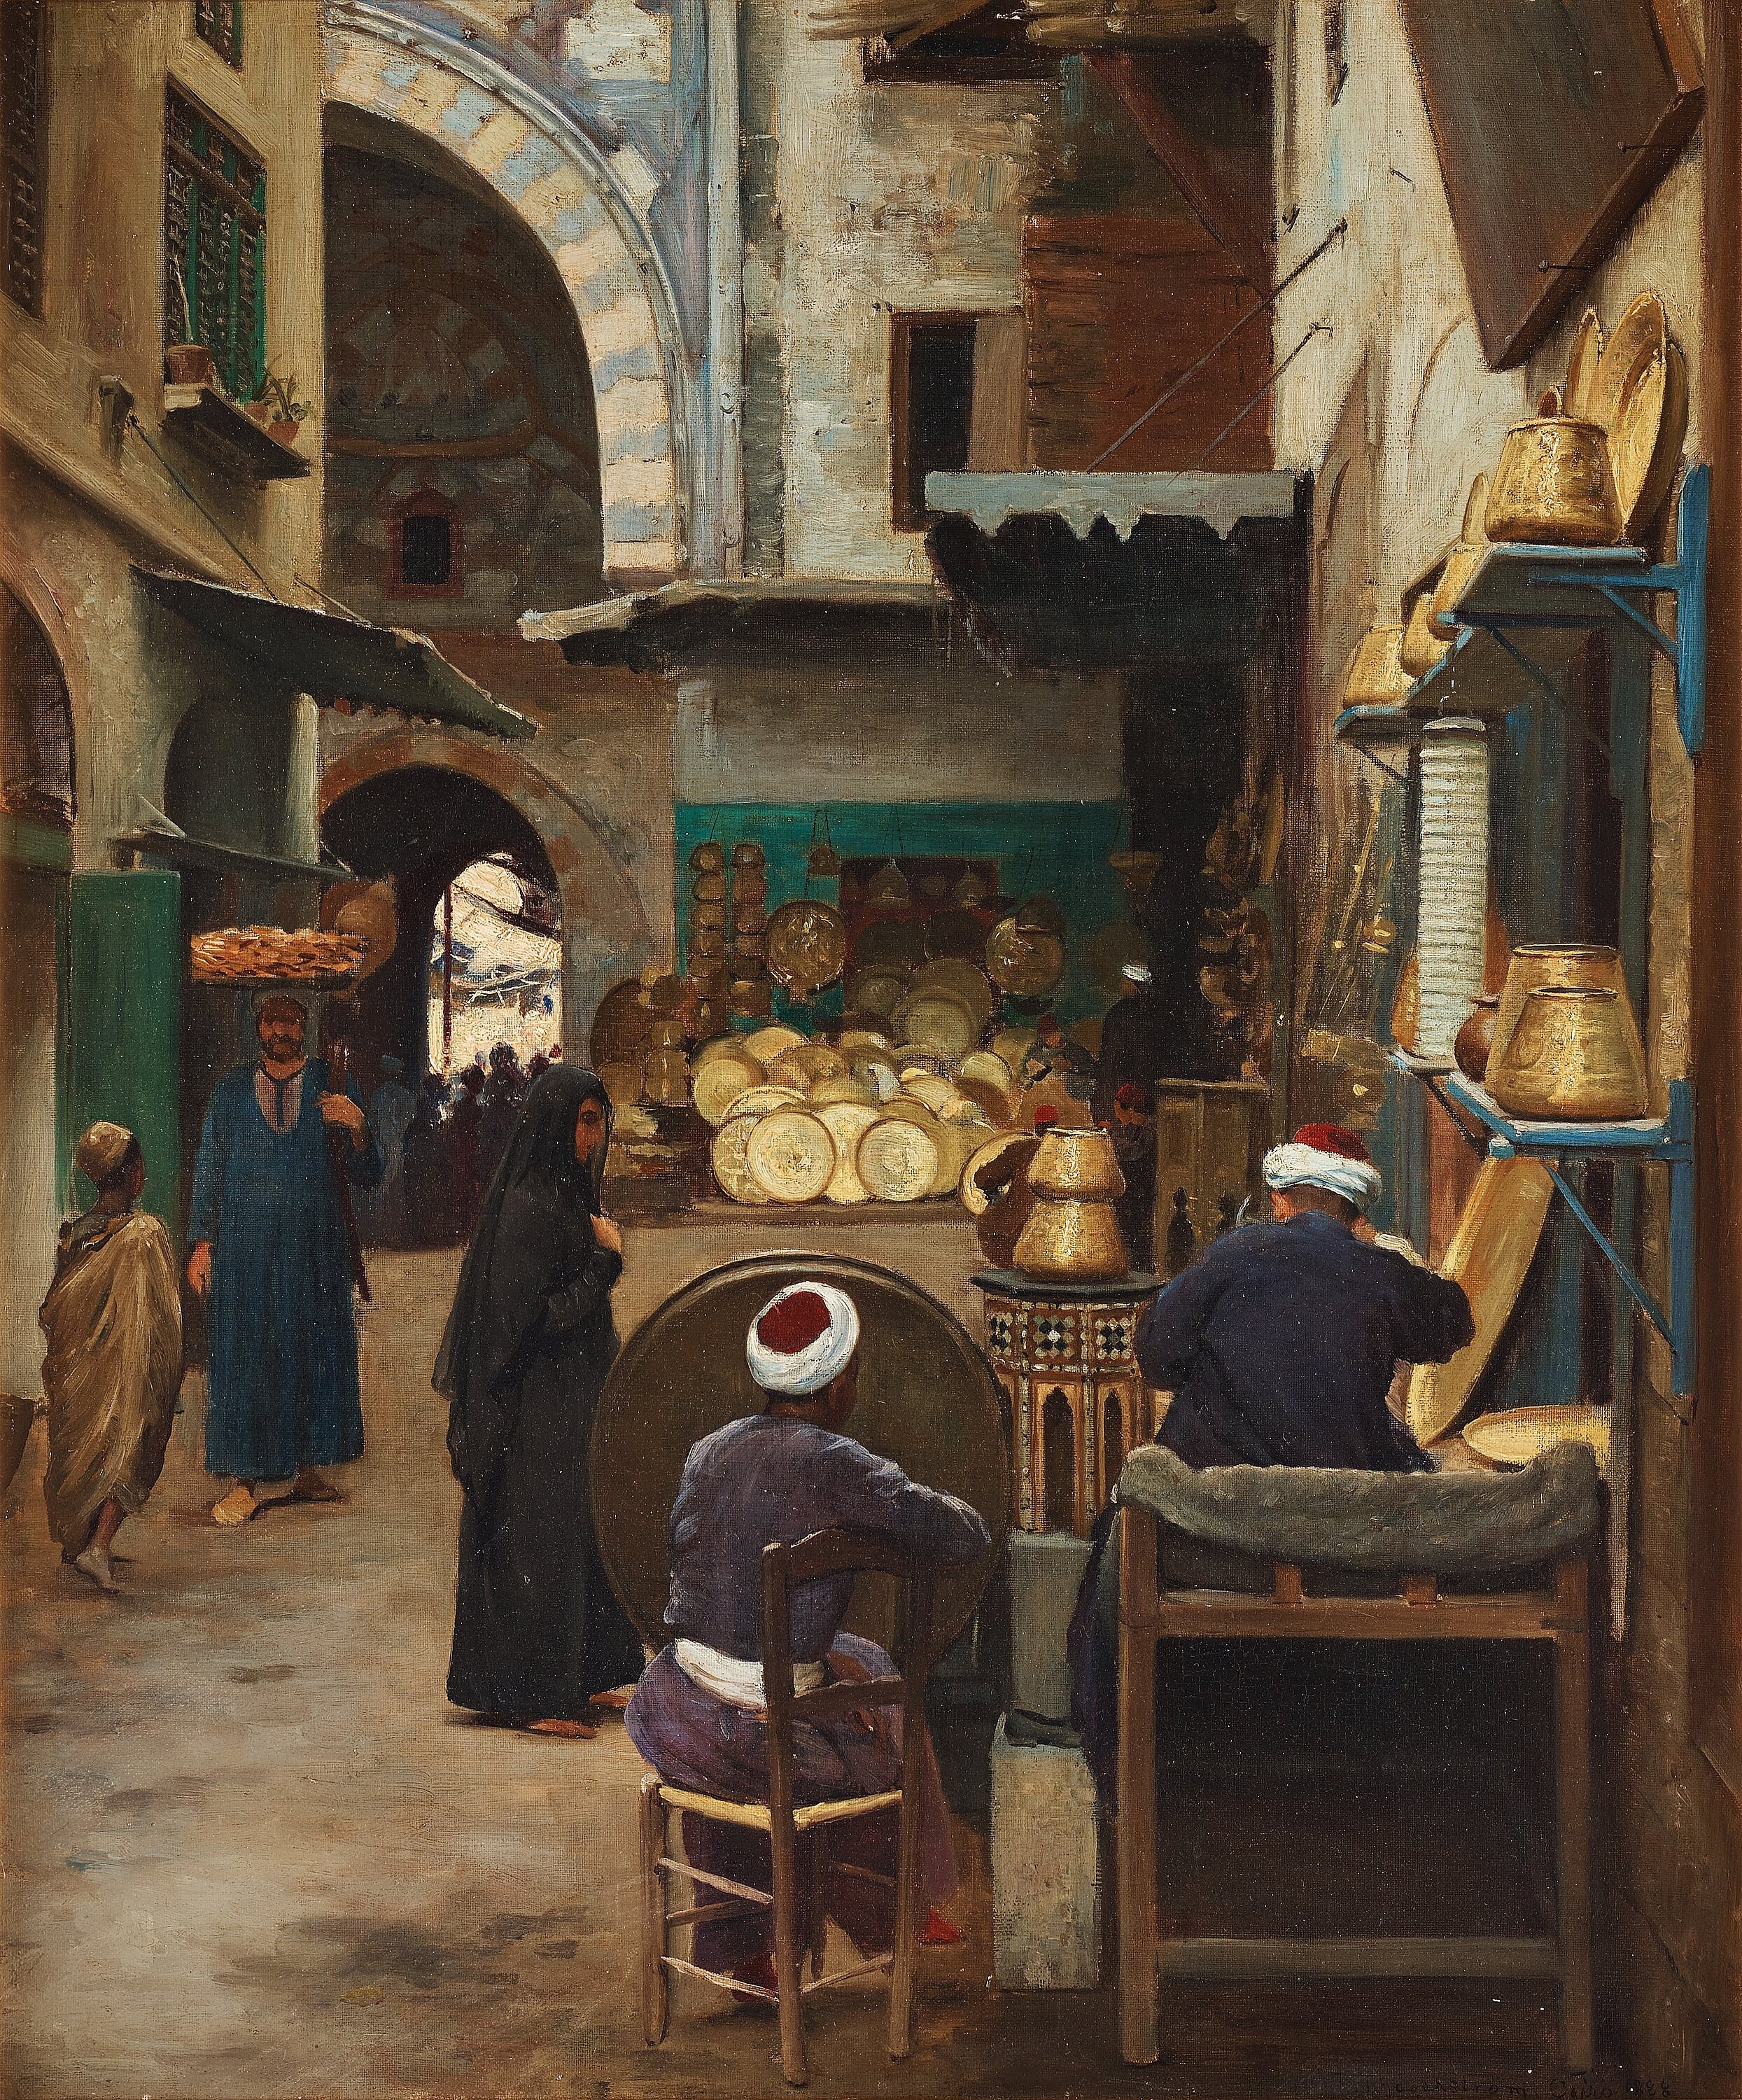 Bazaar scene by Robert Thegerström, 1888